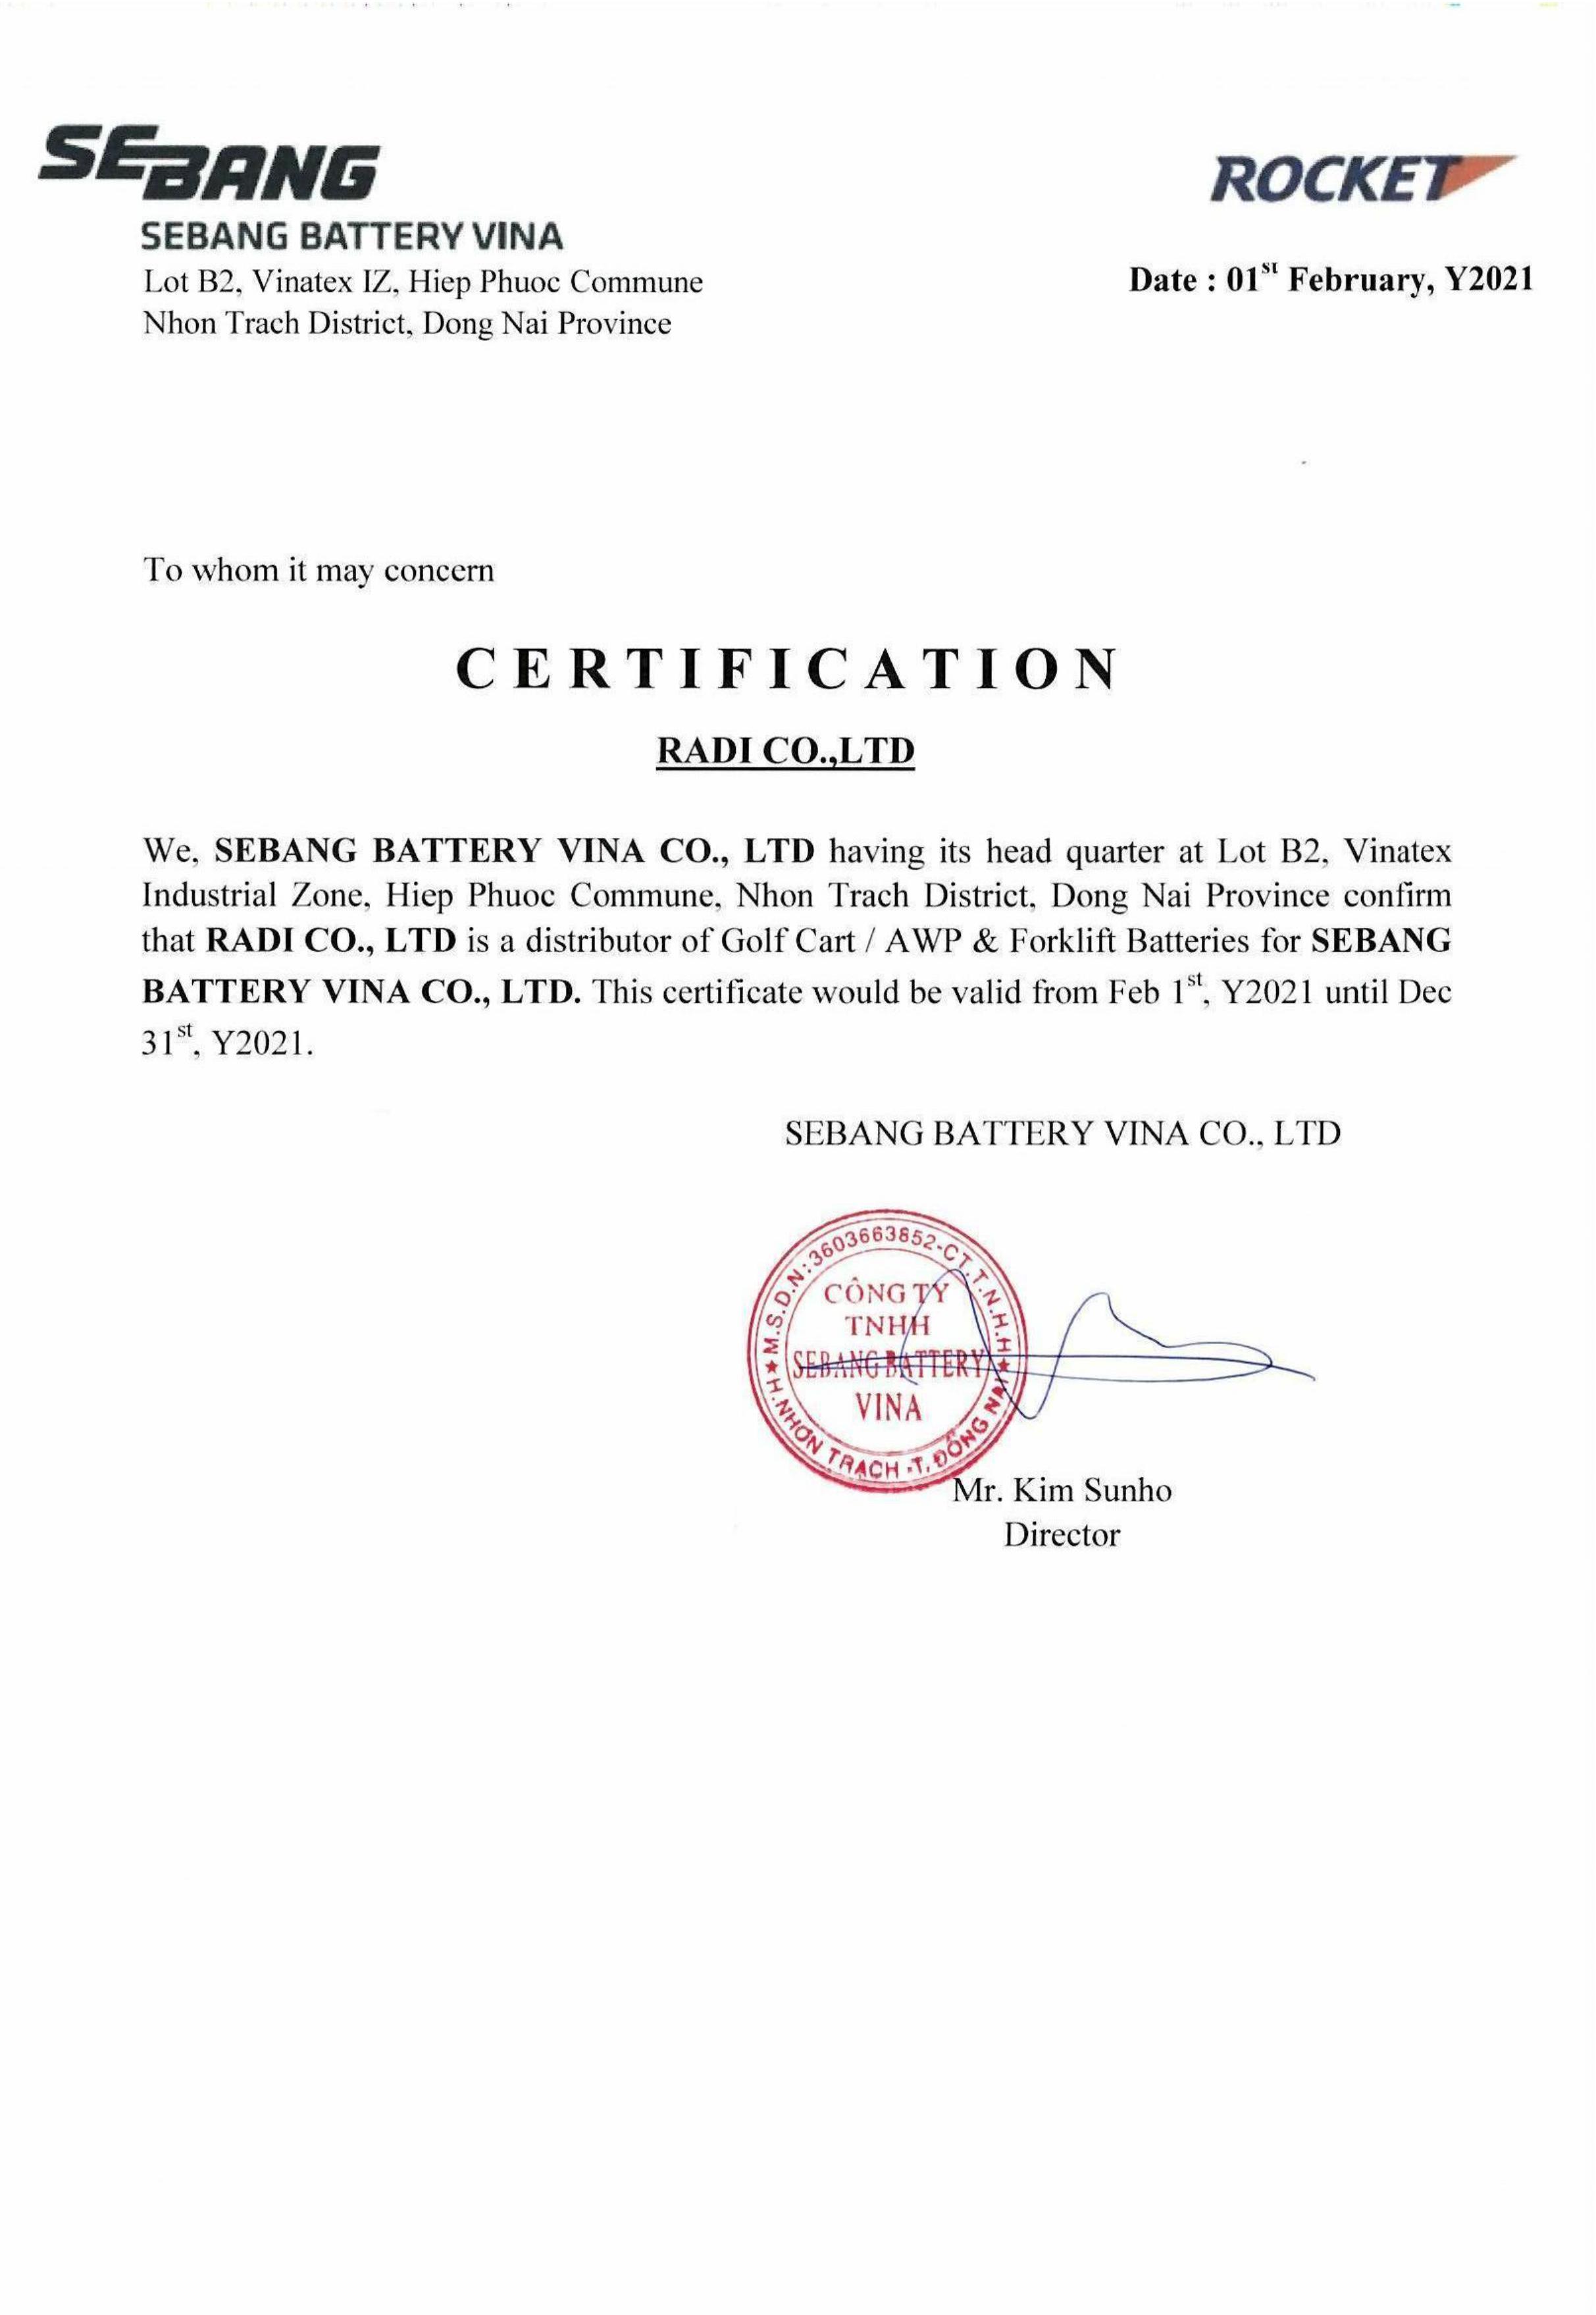 chứng nhận phân phối của công ty TNHH Radi VN